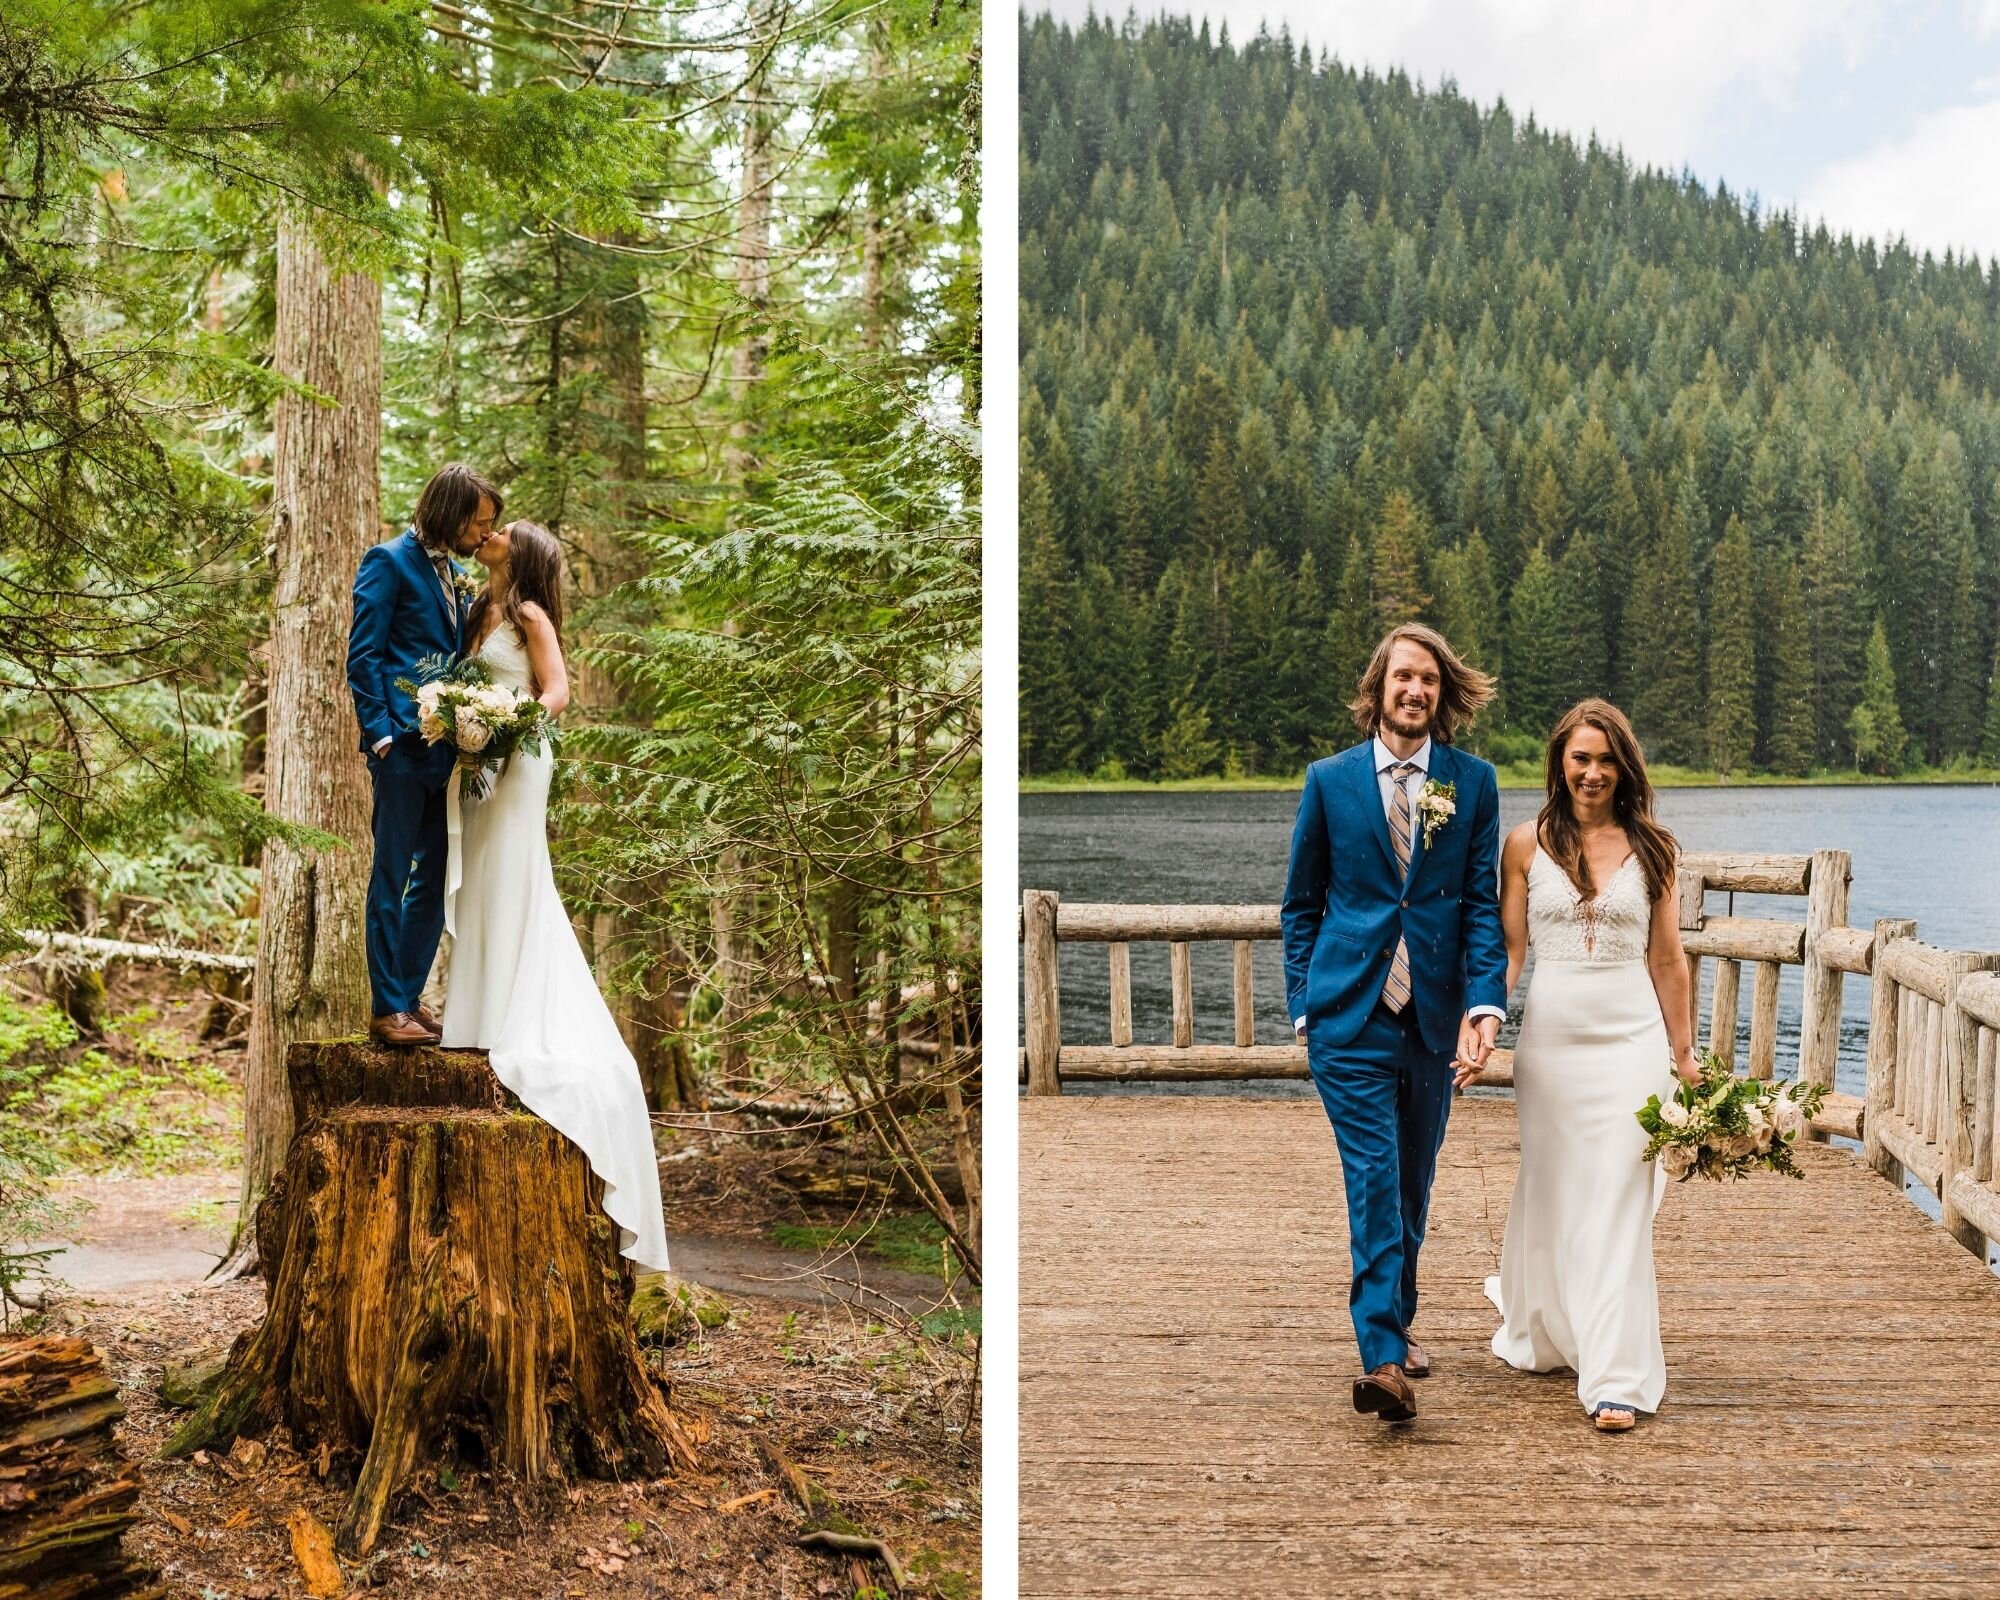 best elopement wedding dresses | Between the Pine